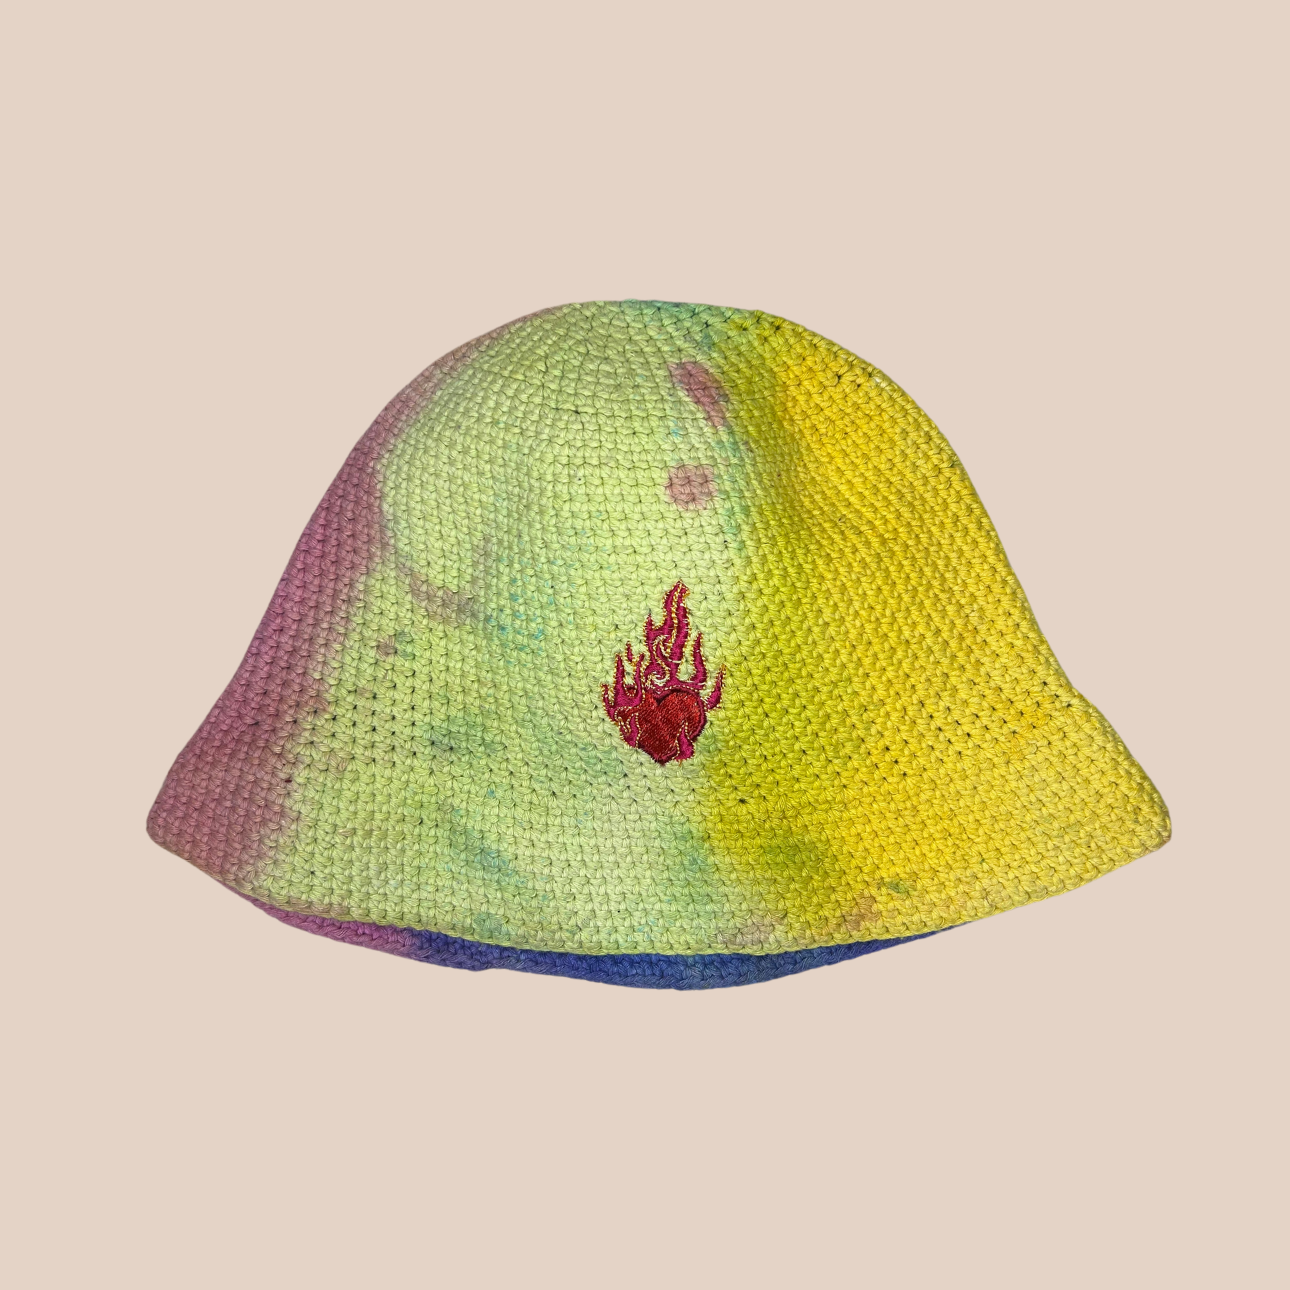 Un bucket hat crocheté en laine et acrylique, arborant des couleurs vives et audacieuses, motif coeur enflammé